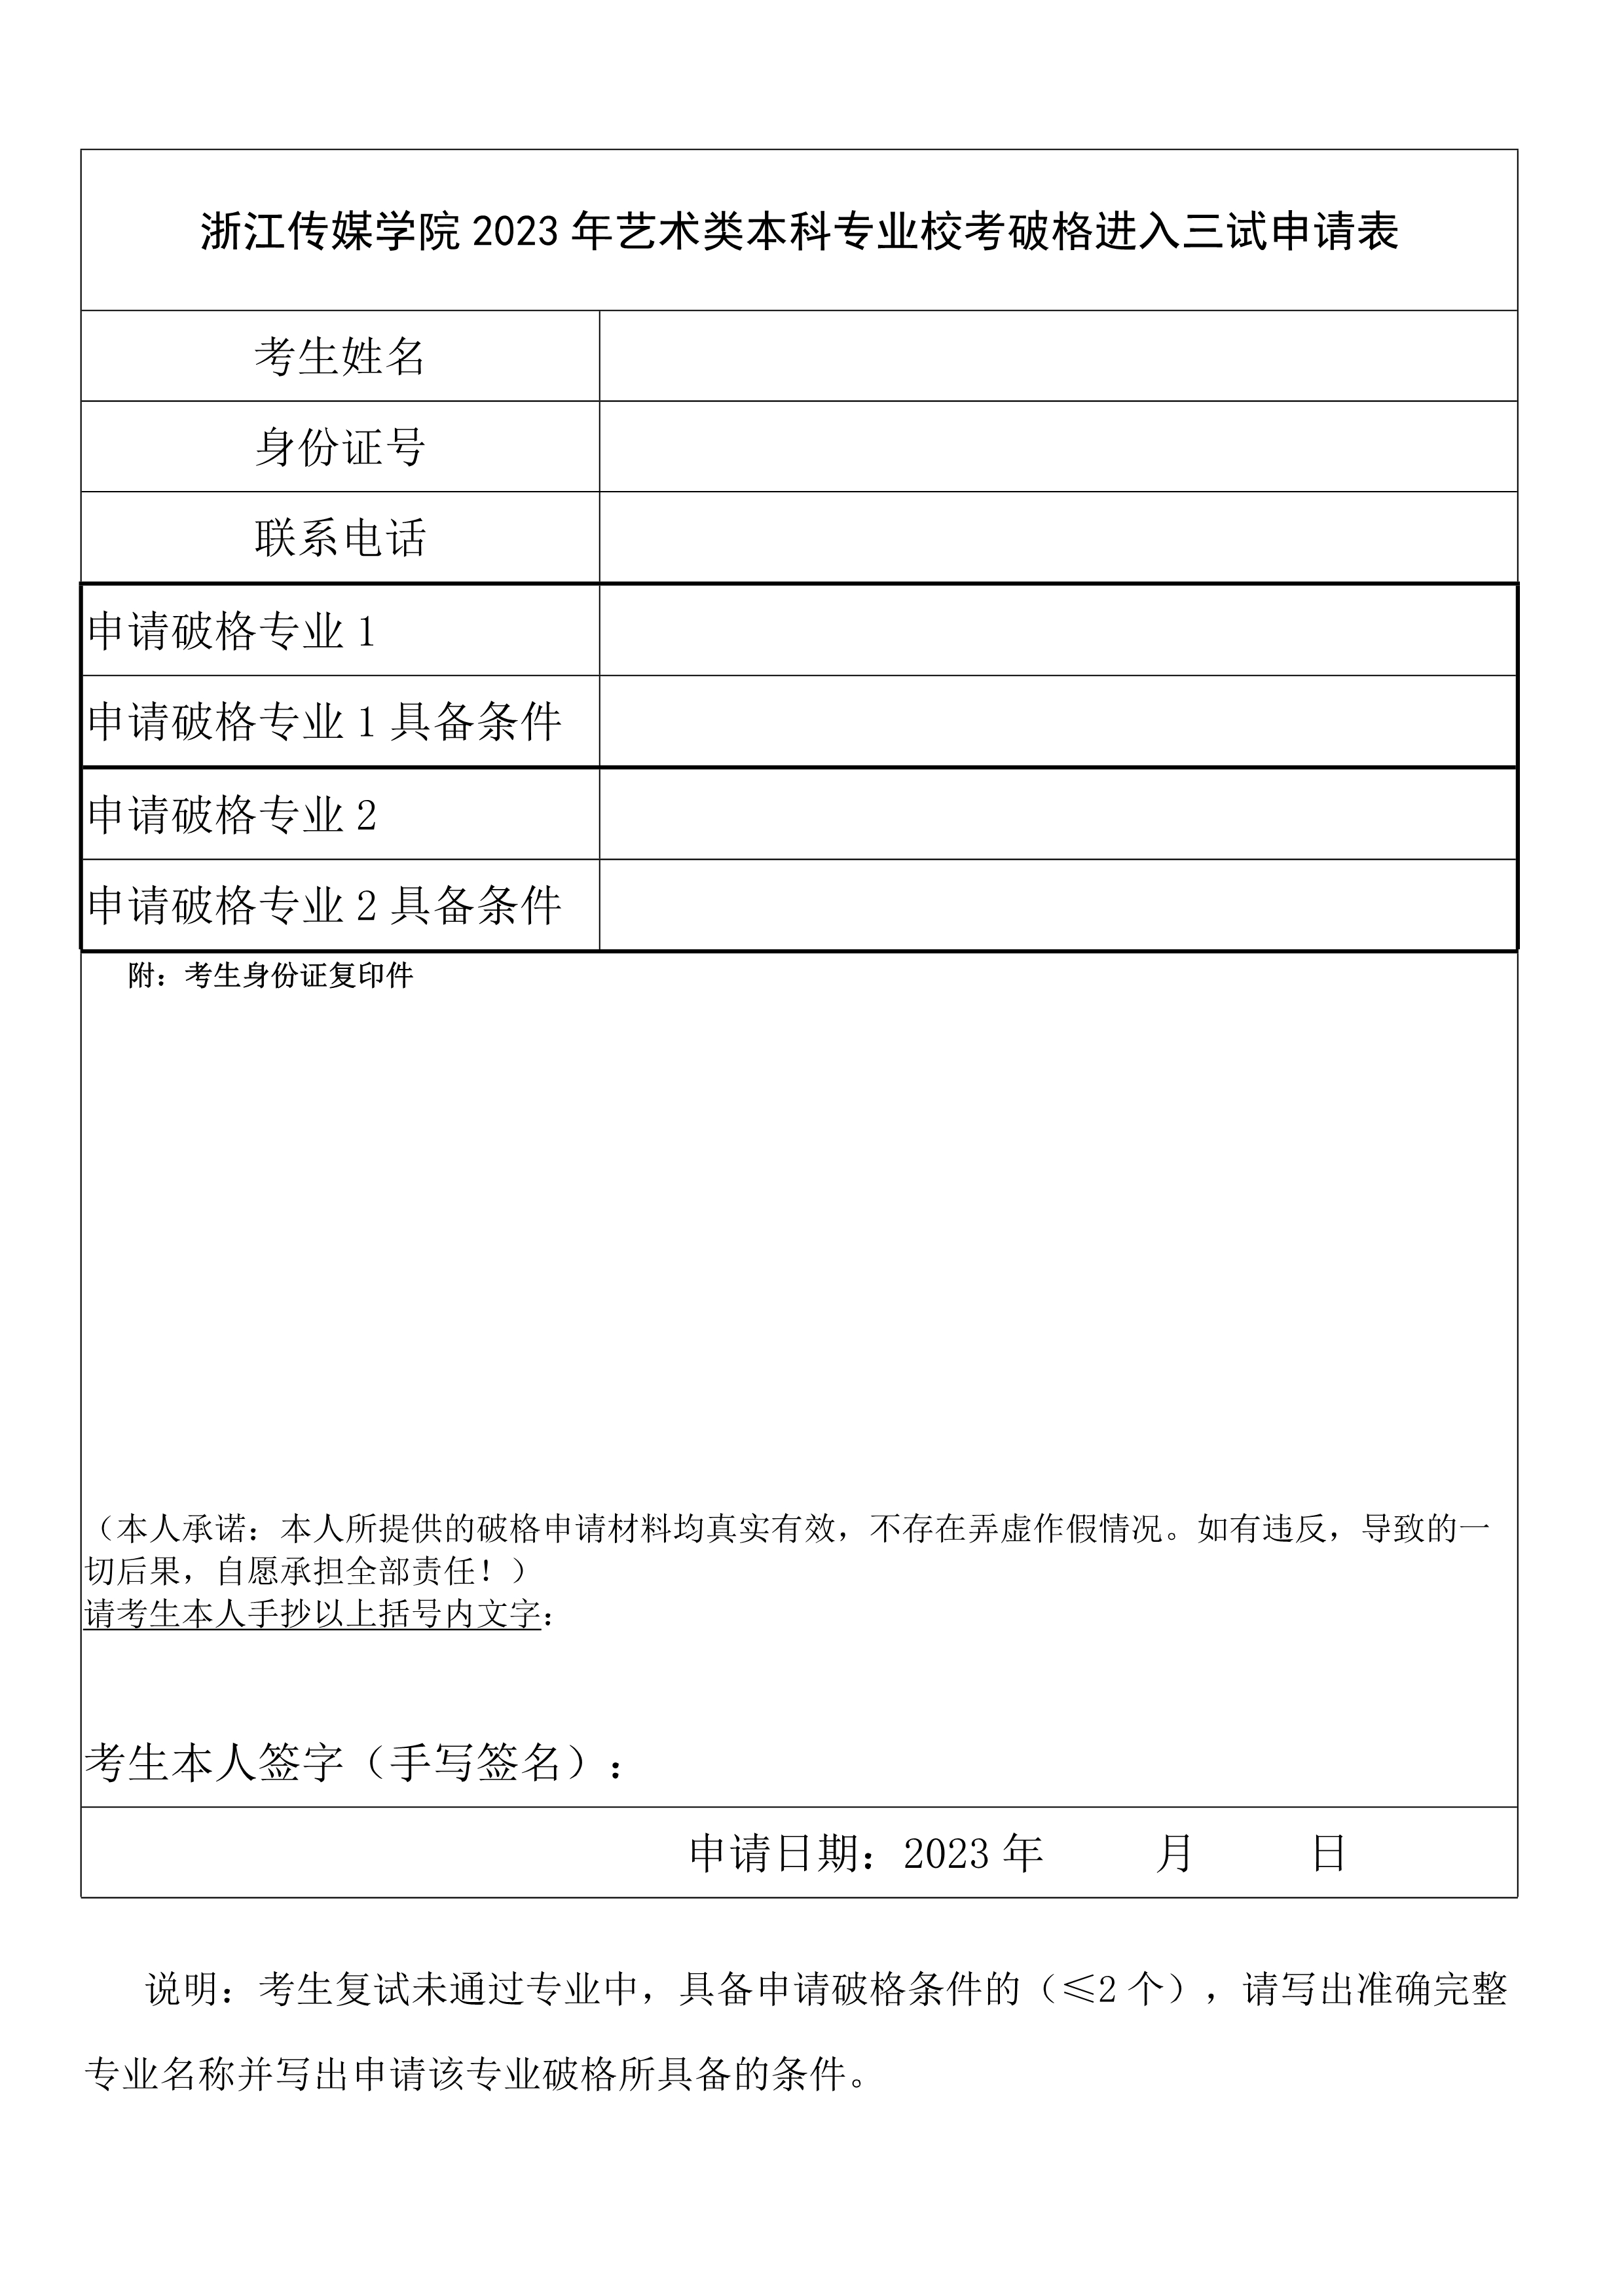 附件：浙江传媒学院2023年艺术类本科专业校考破格进入三试申请表_1.jpg